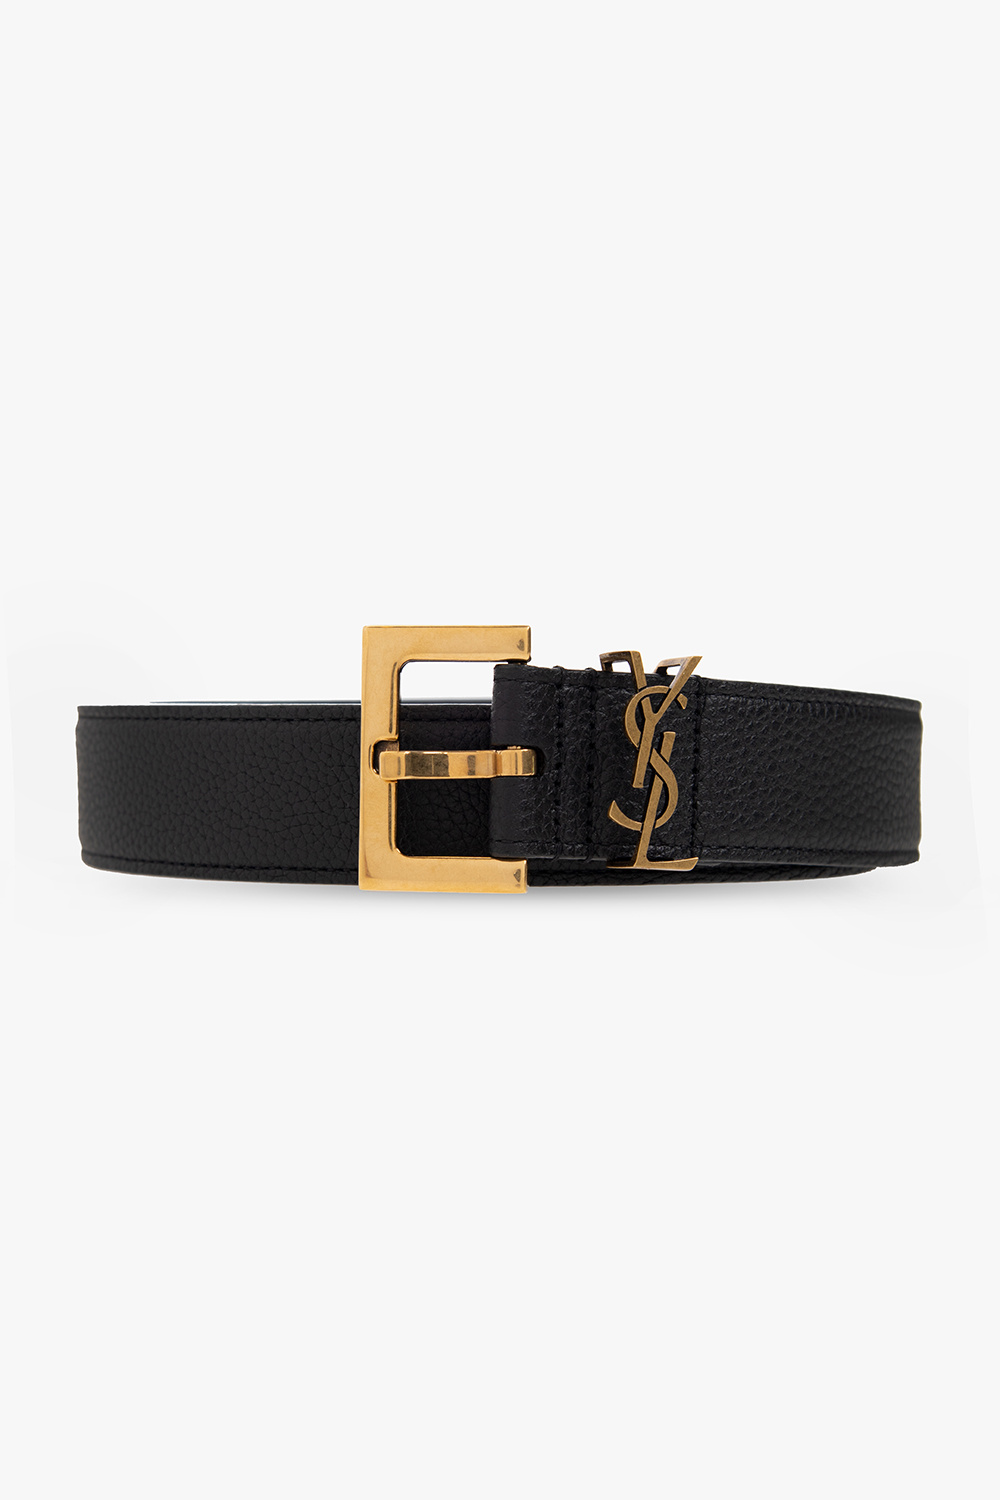 Black YSL-plaque leather belt, Saint Laurent